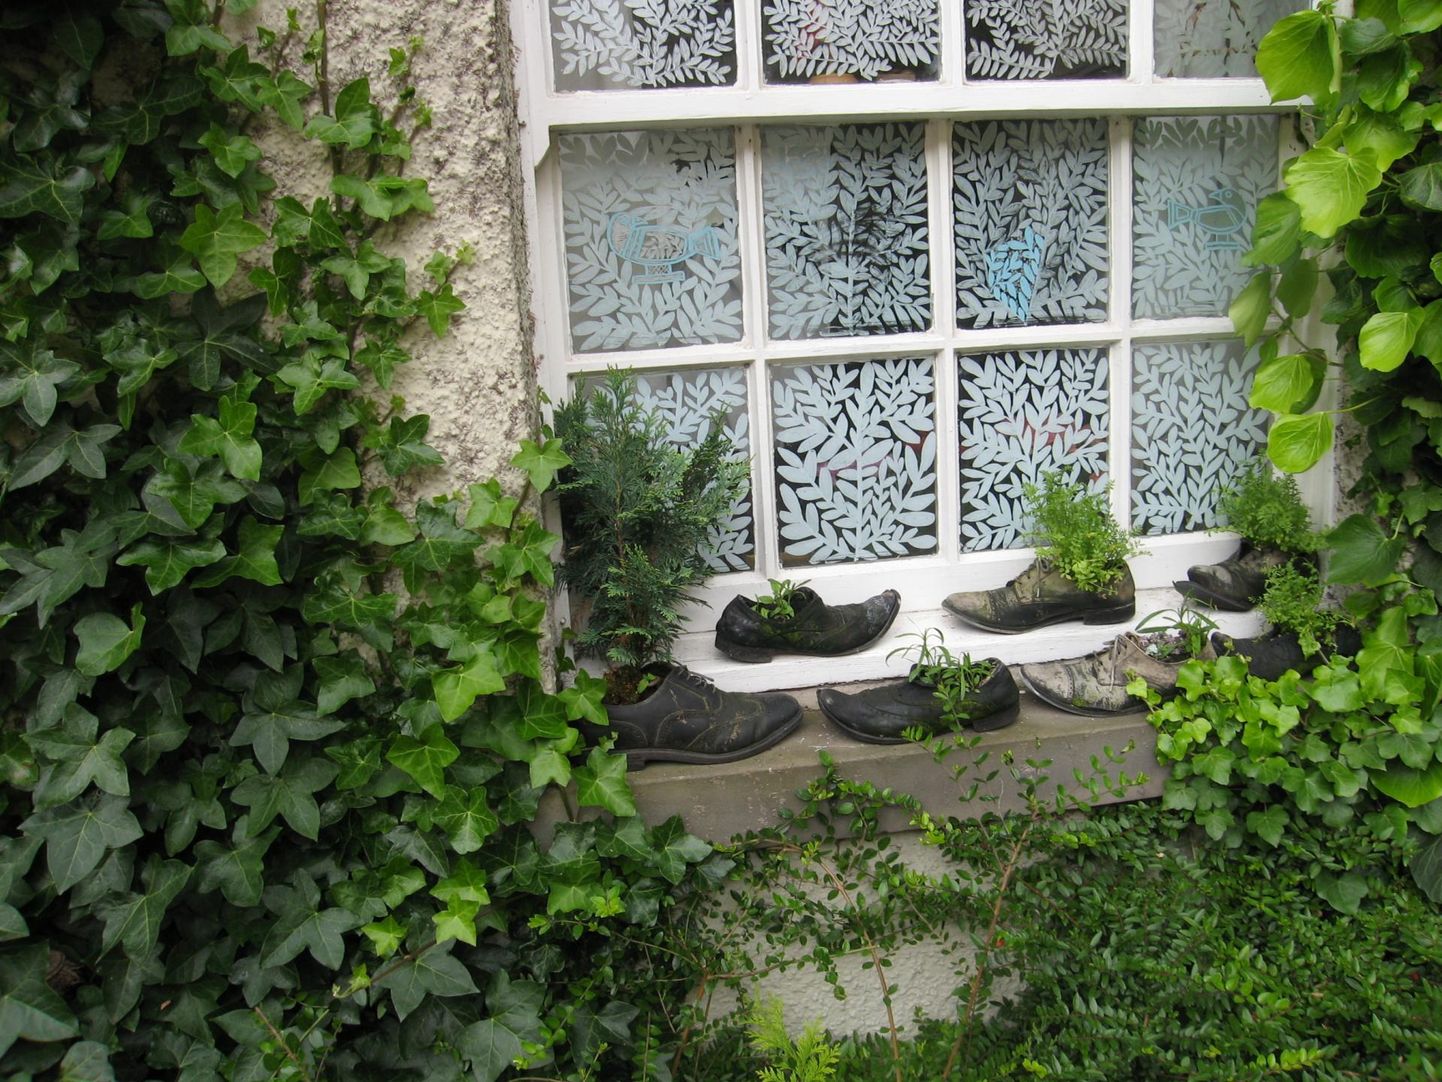 Väga lihtne vertikaalaialahendus Edinburghist, kus nagu mujalgi Suurbritannias armastatakse aknaid, mille saab toas olles üles lükates avada. Tuulevaikses hoovis võib siis vanad kingad aknalauale rivistada ja neis ürte jt taimi kasvatada.